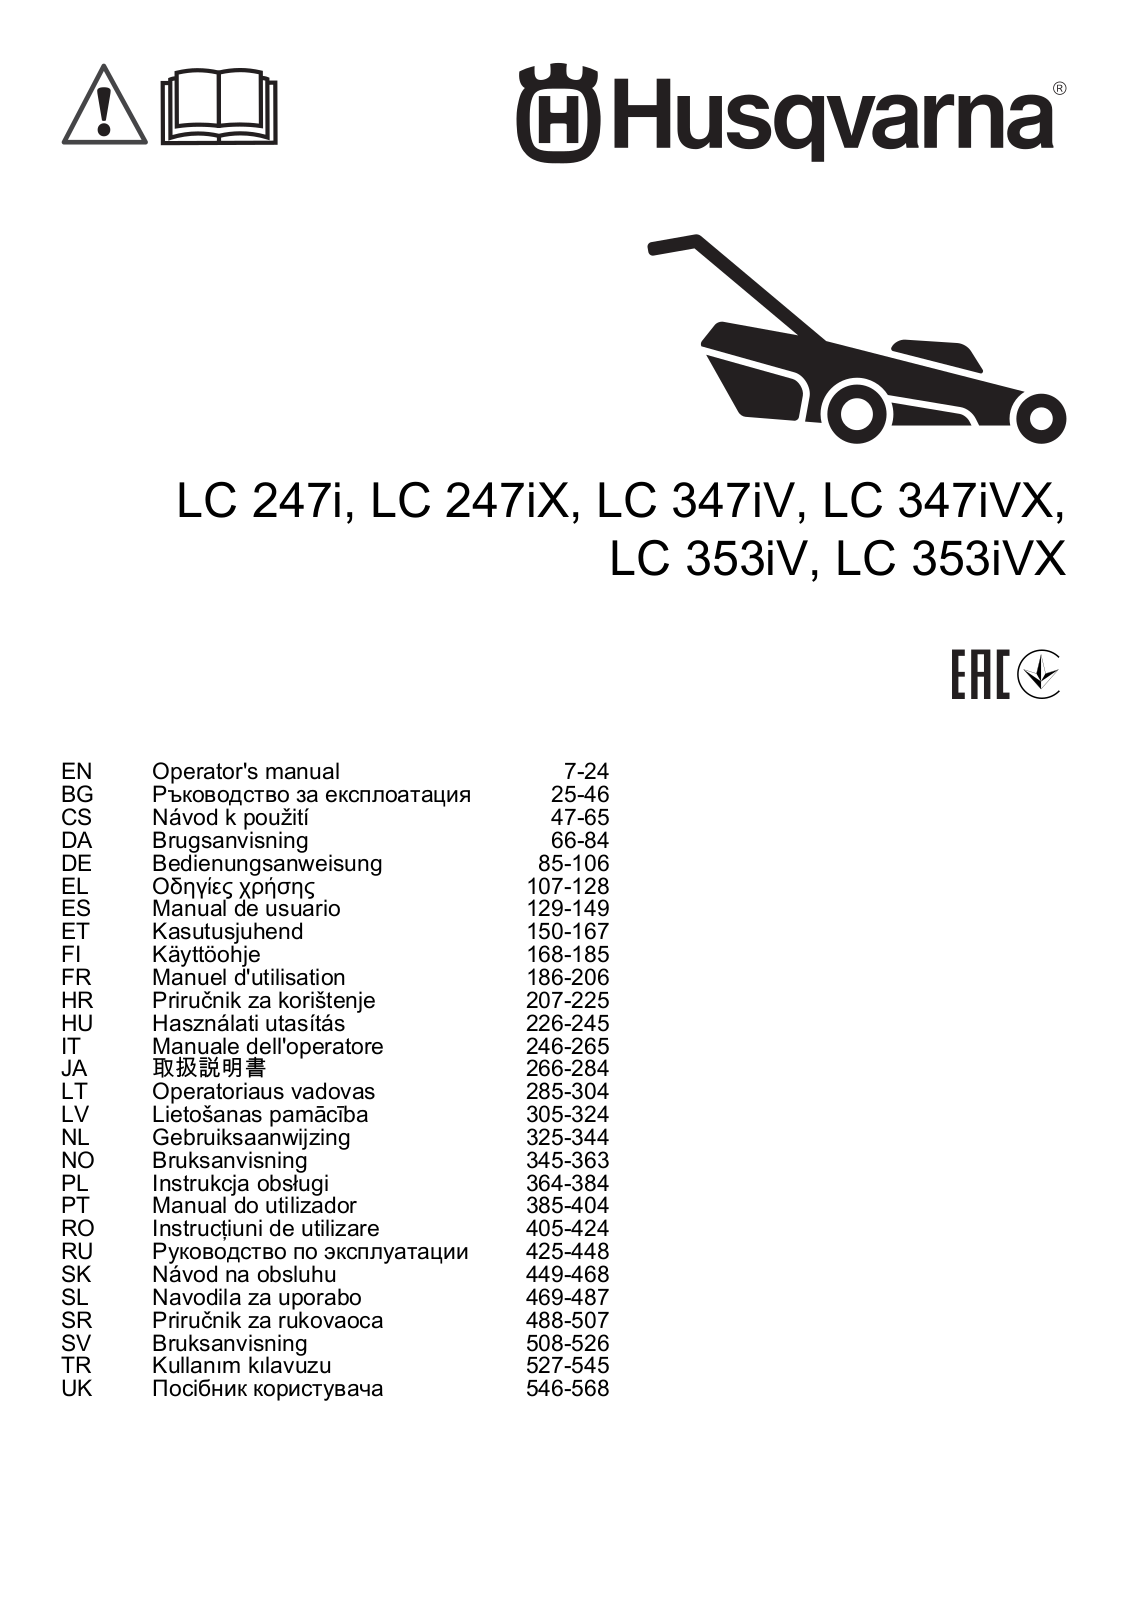 Husqvarna LC 247iX operation manual